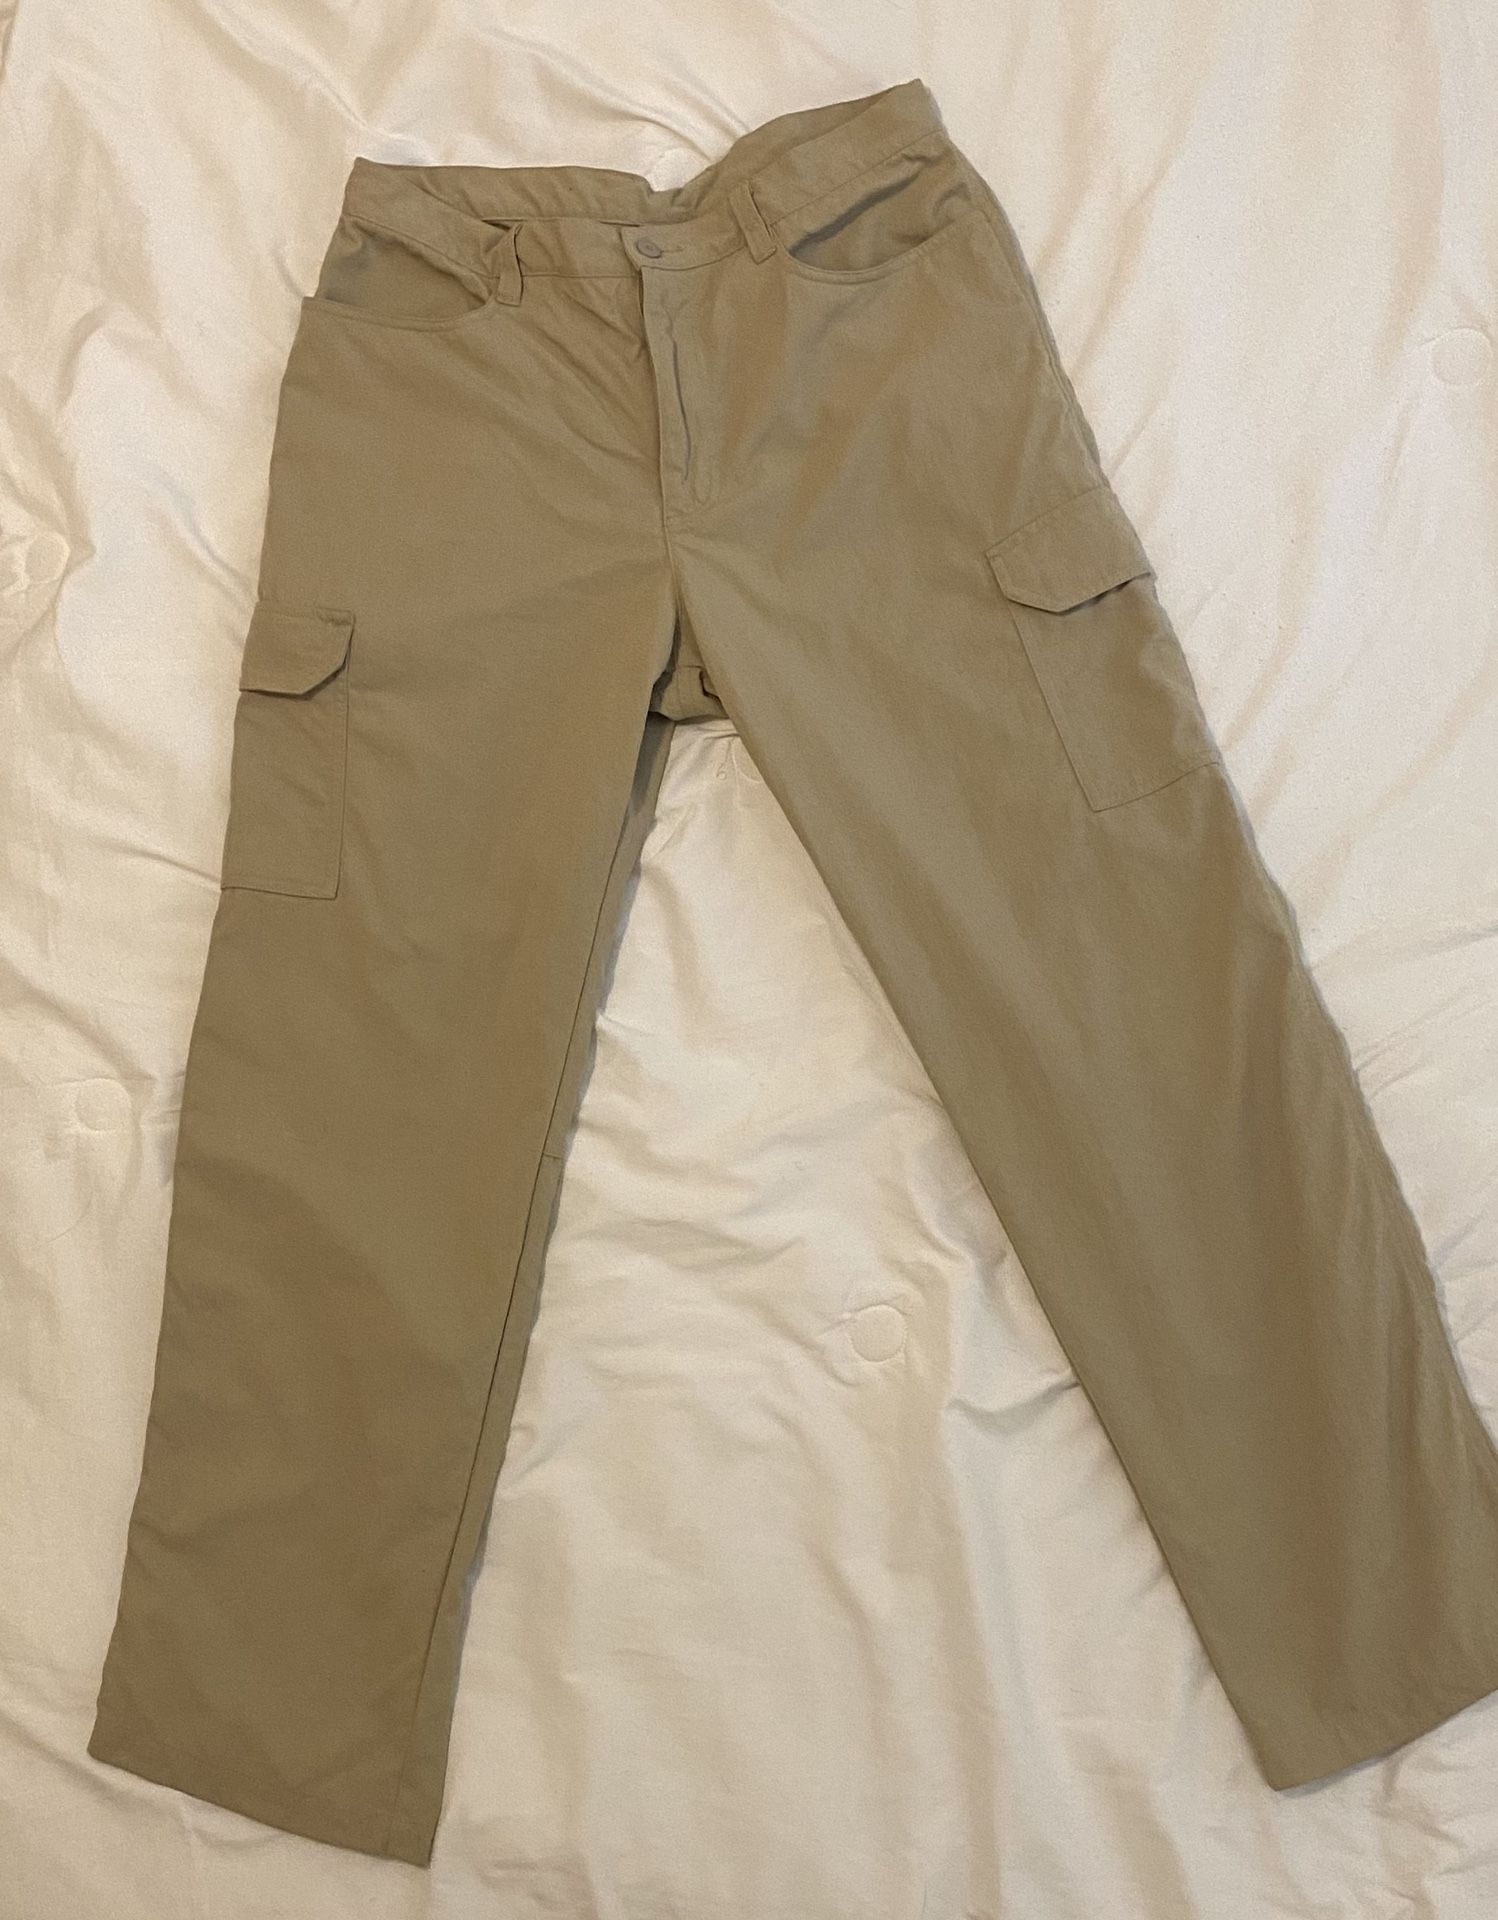 Men’s Patagonia Size 34 Khaki Pants 